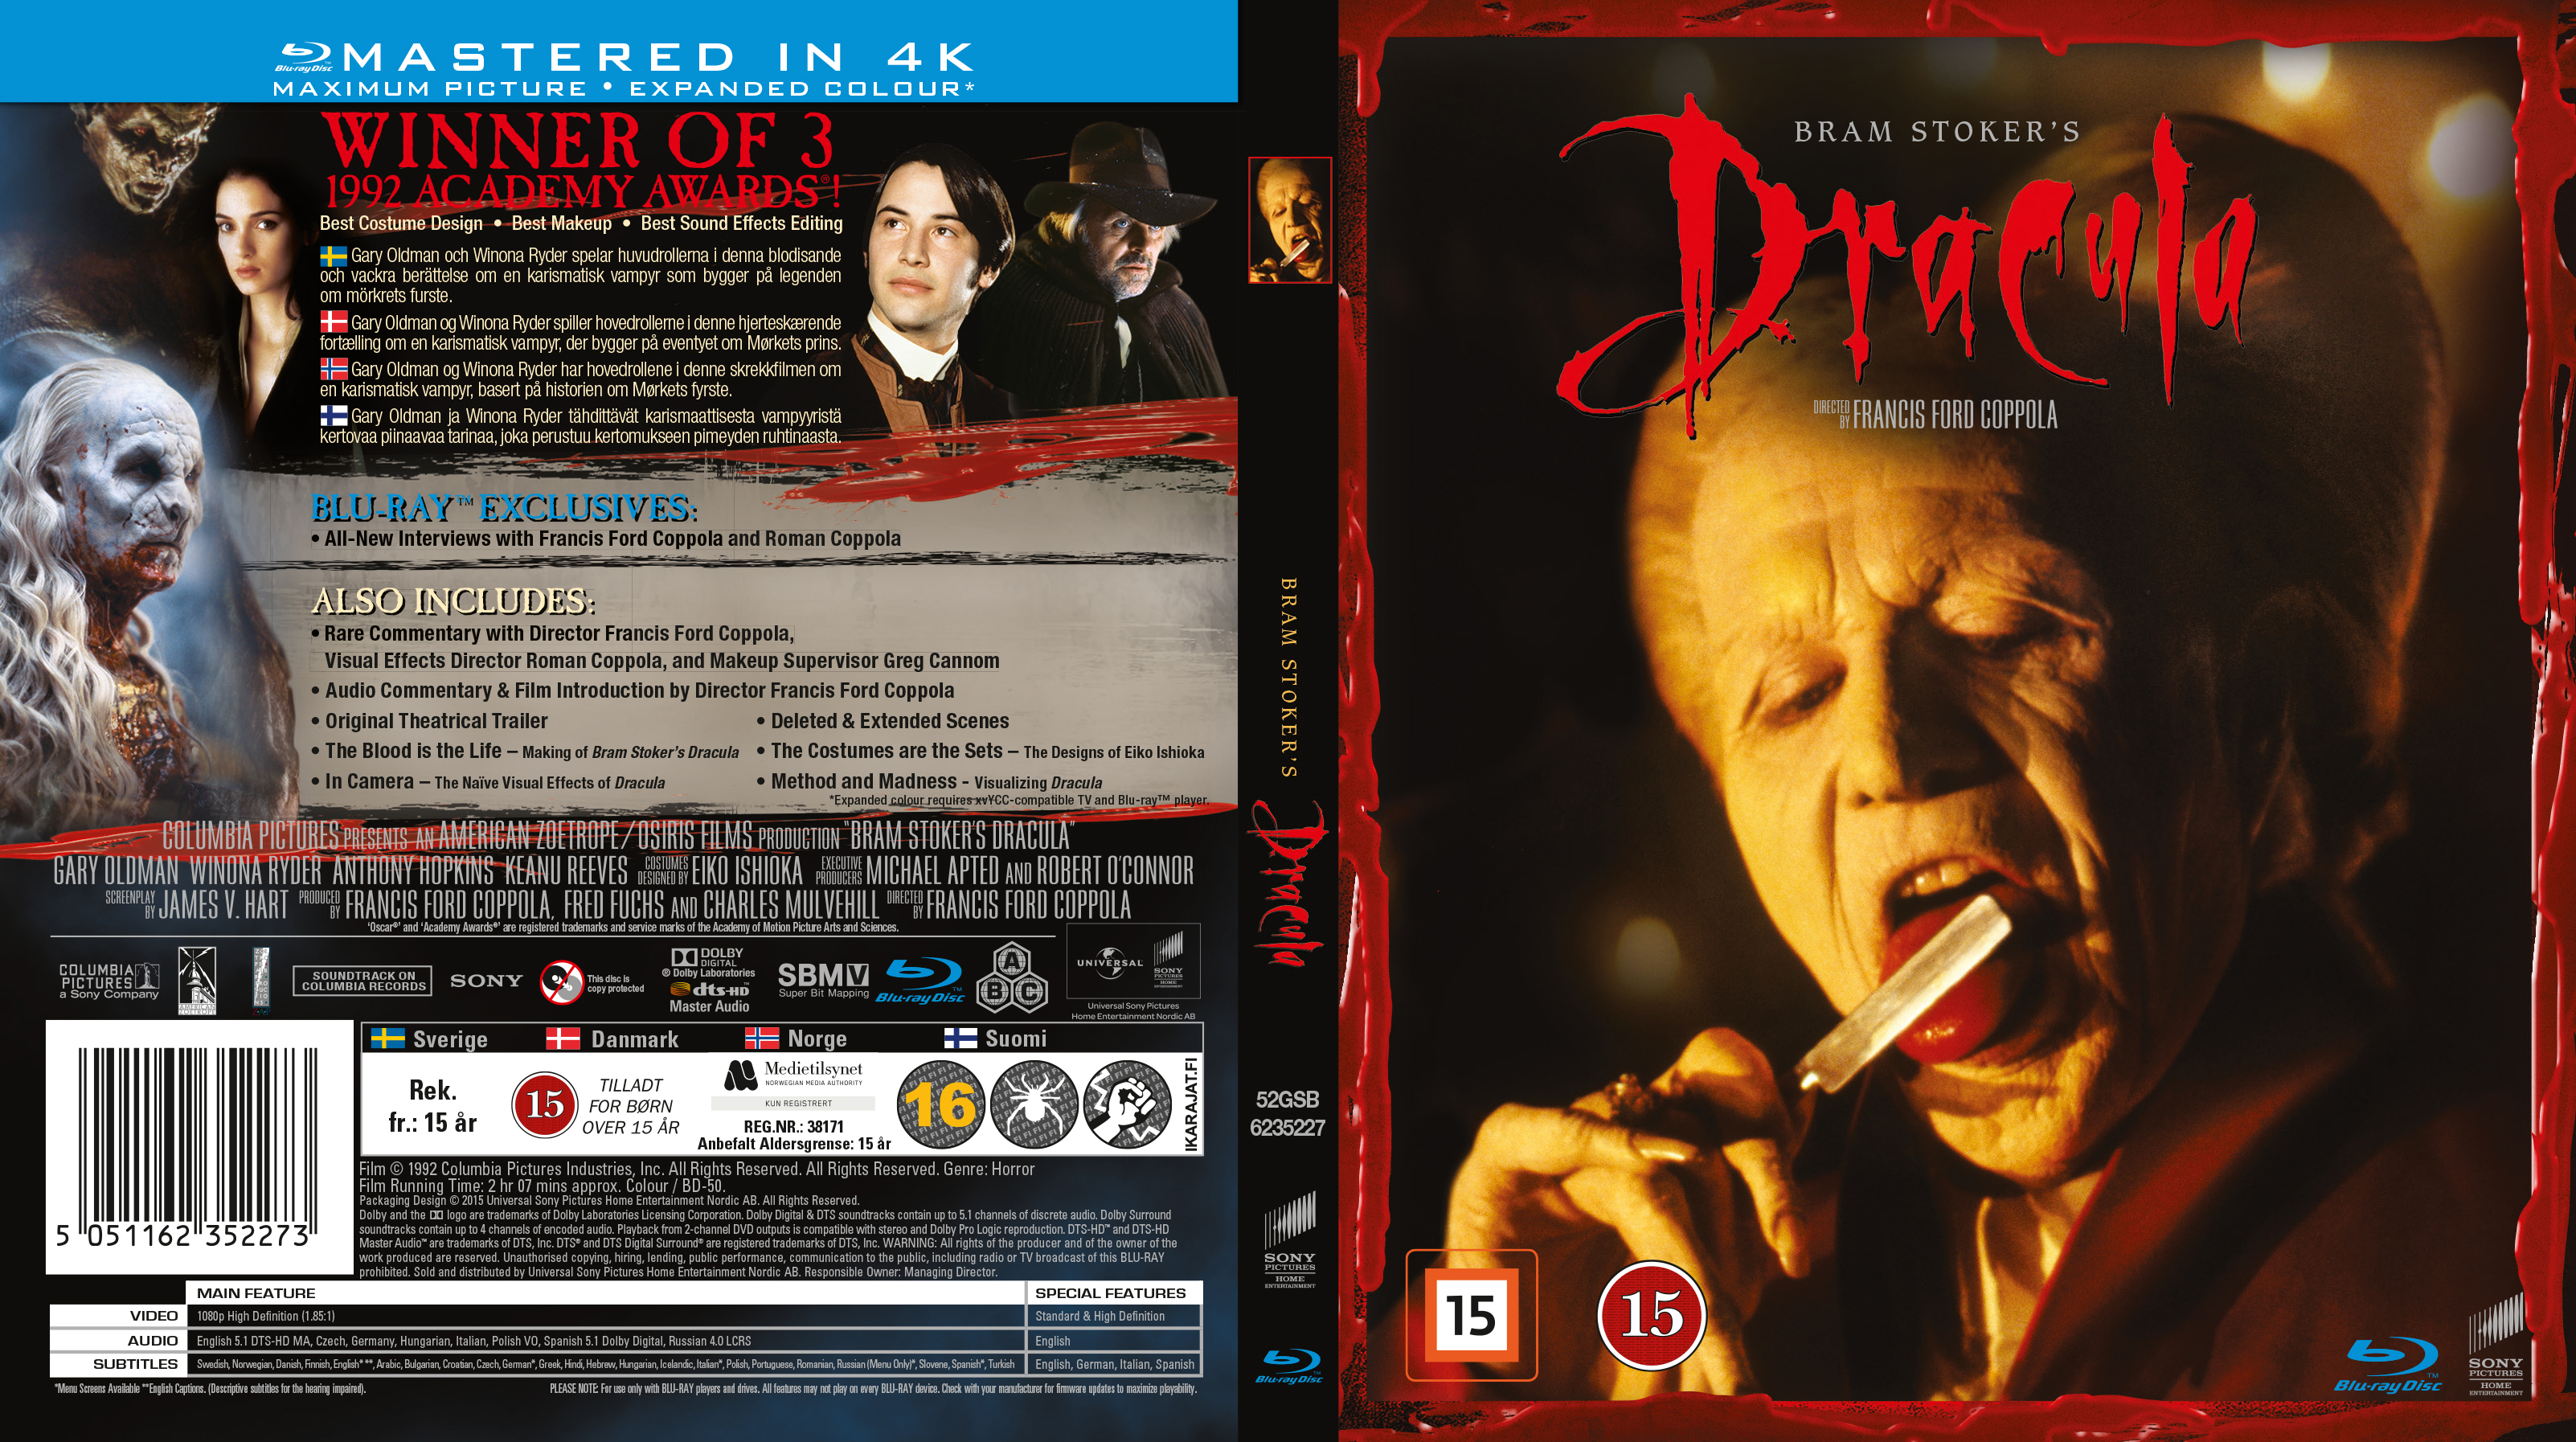 Bram Stoker's Dracula (1992) DVD